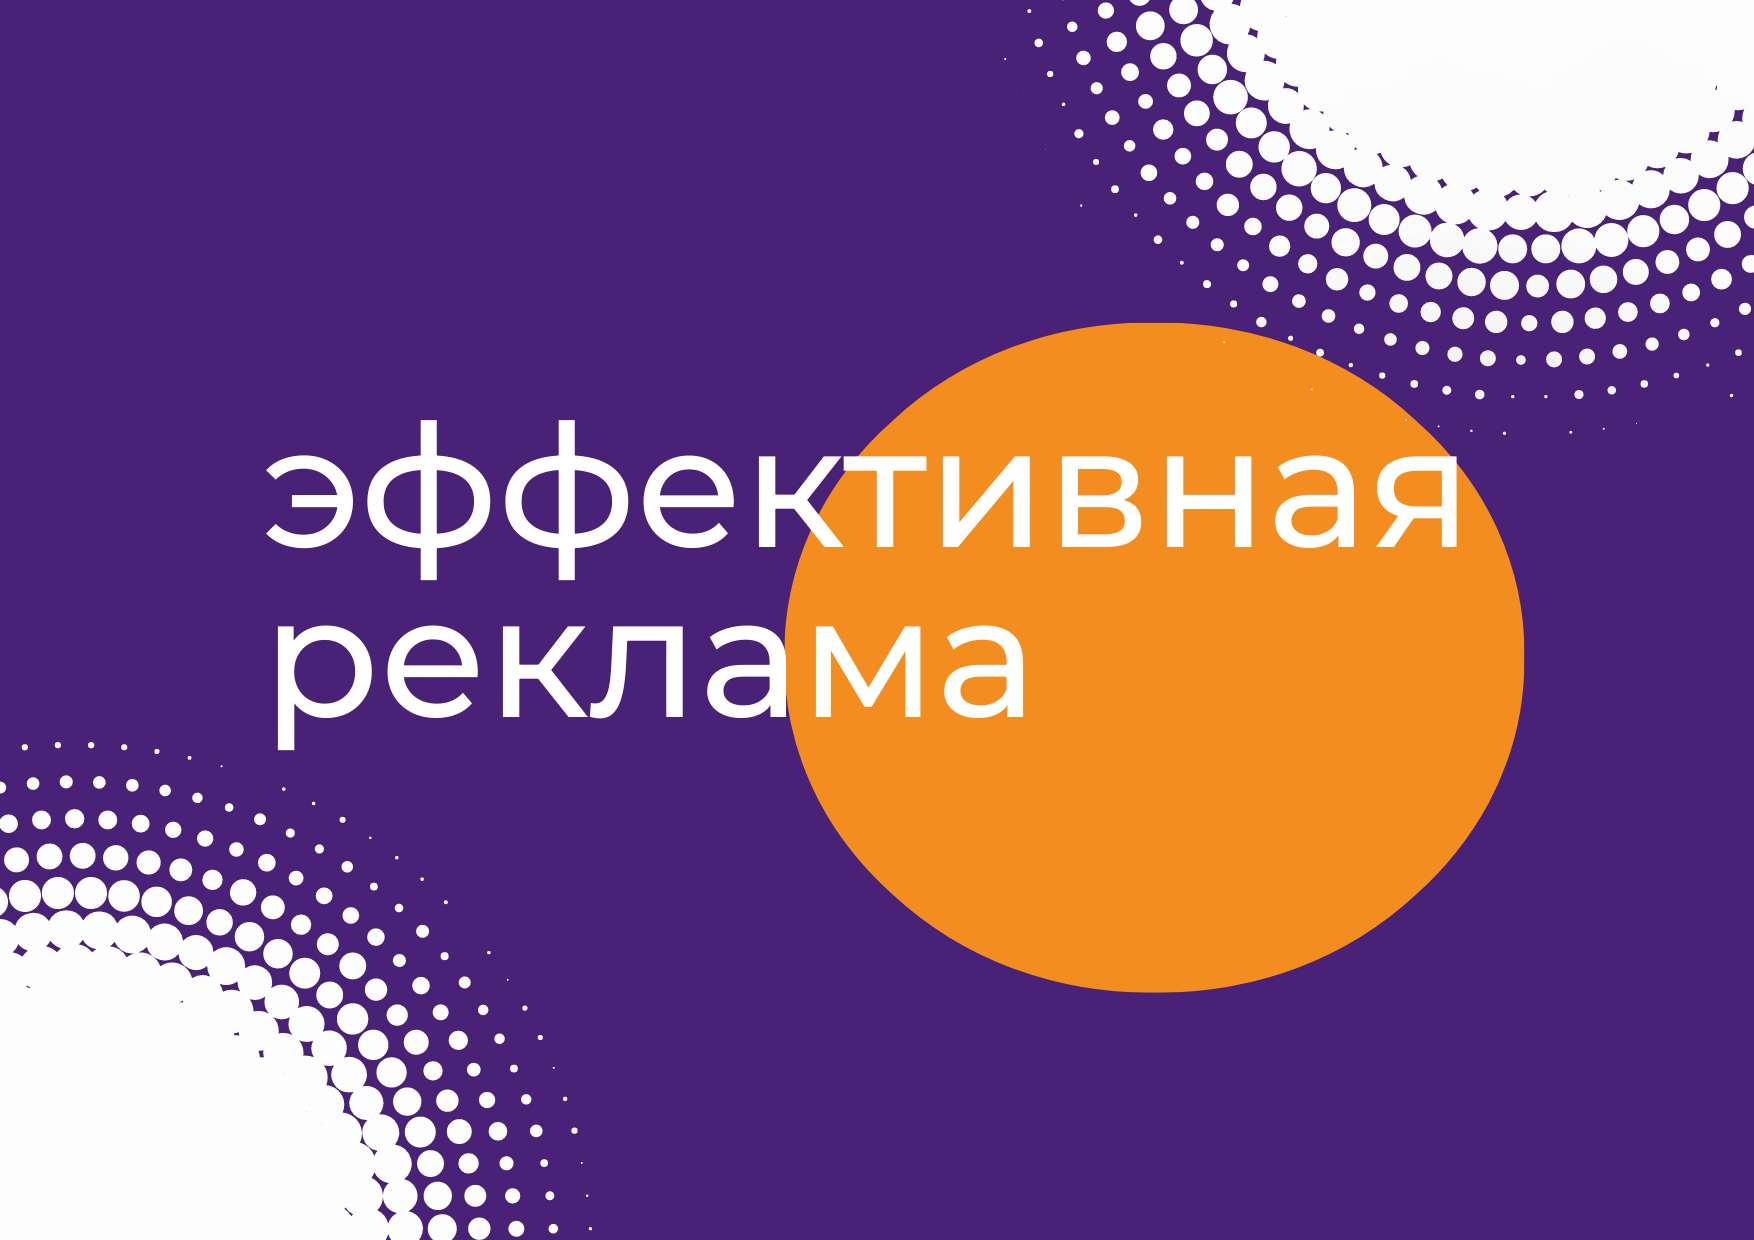 Презентация Эффективная реклама на однотонном фиолетовом фоне с ярким оранжевым кругом